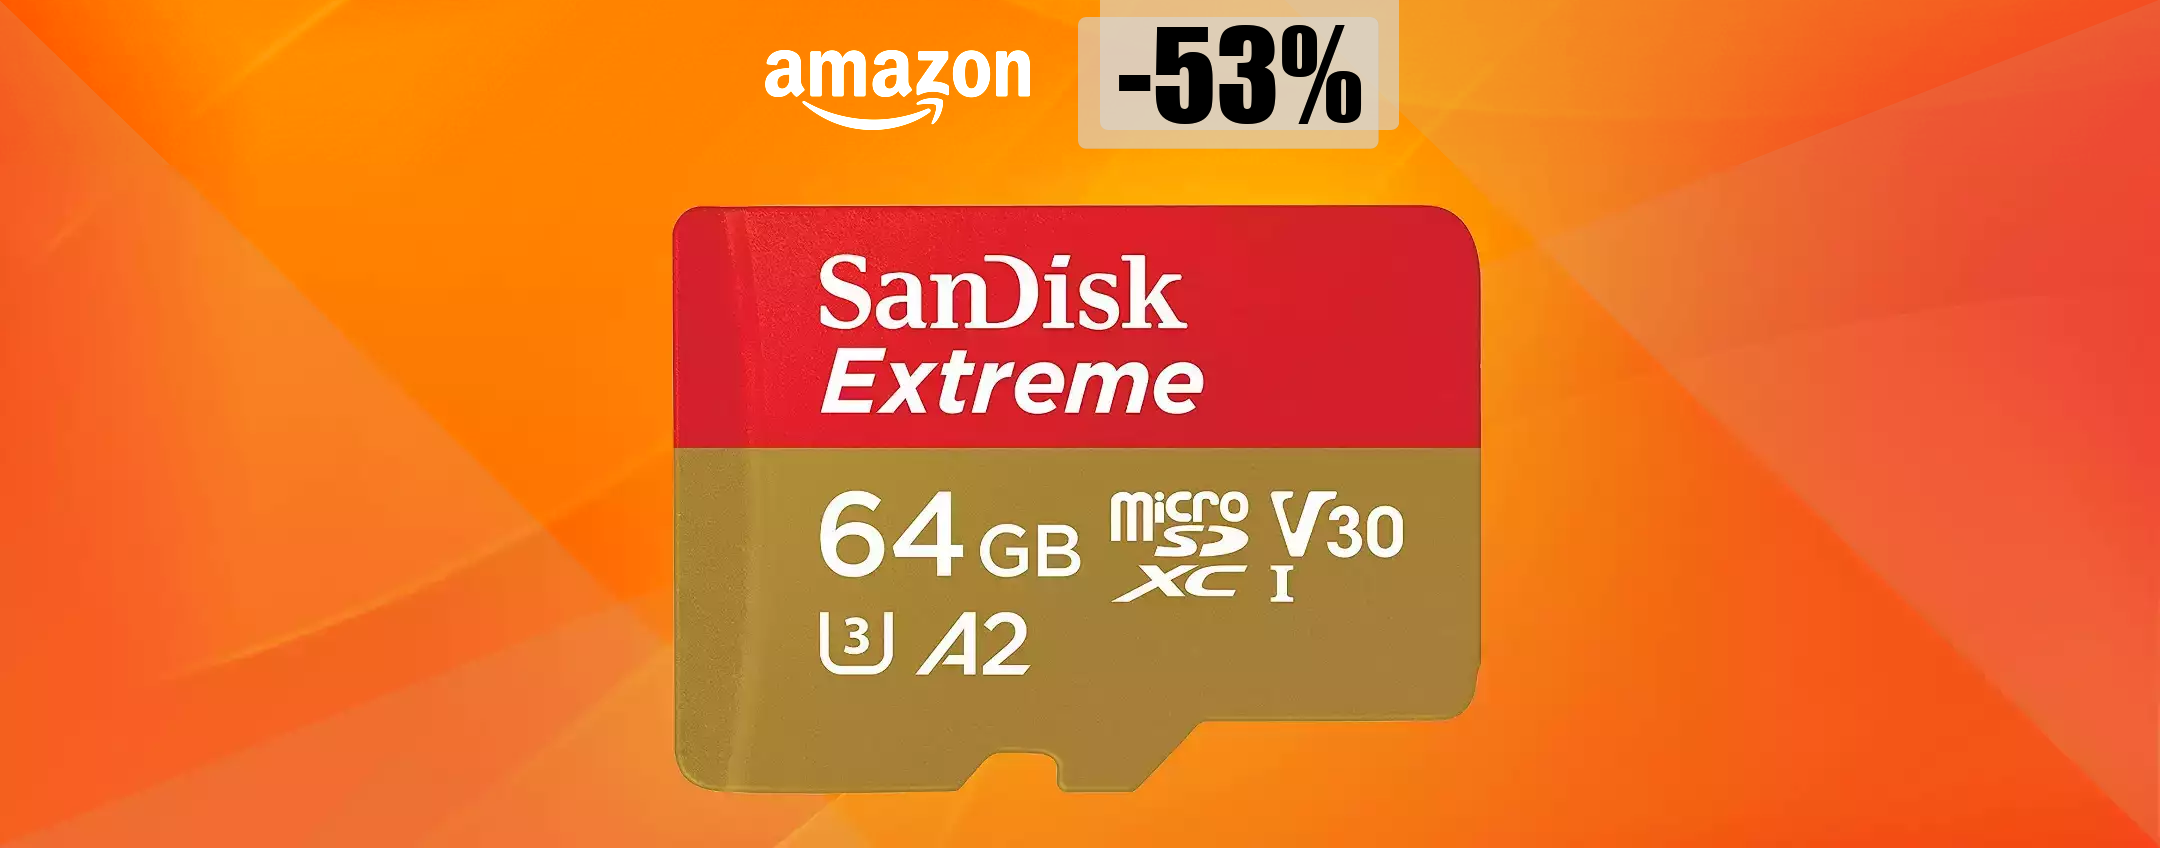 MicroSD 64GB a meno di metà prezzo: l'AFFARE del momento (15 euro)